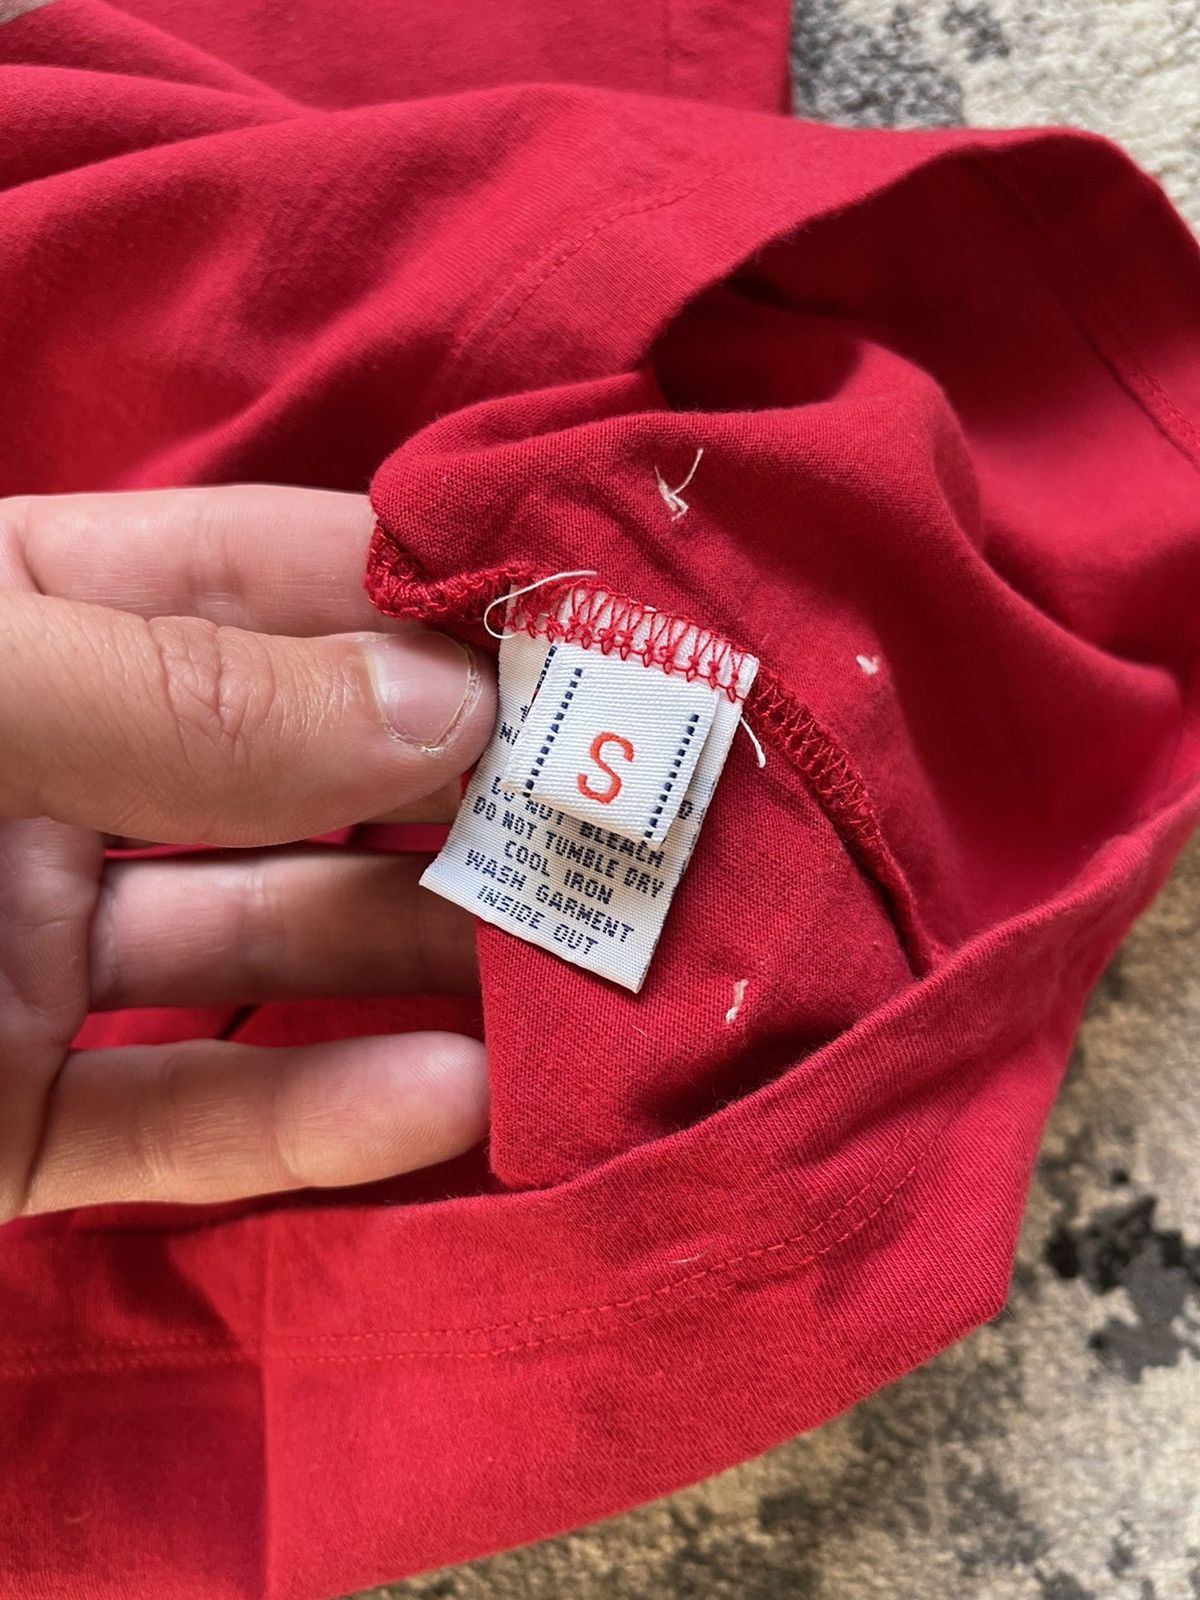 Evisu Evisu T-Shirt red S Size US S / EU 44-46 / 1 - 4 Preview